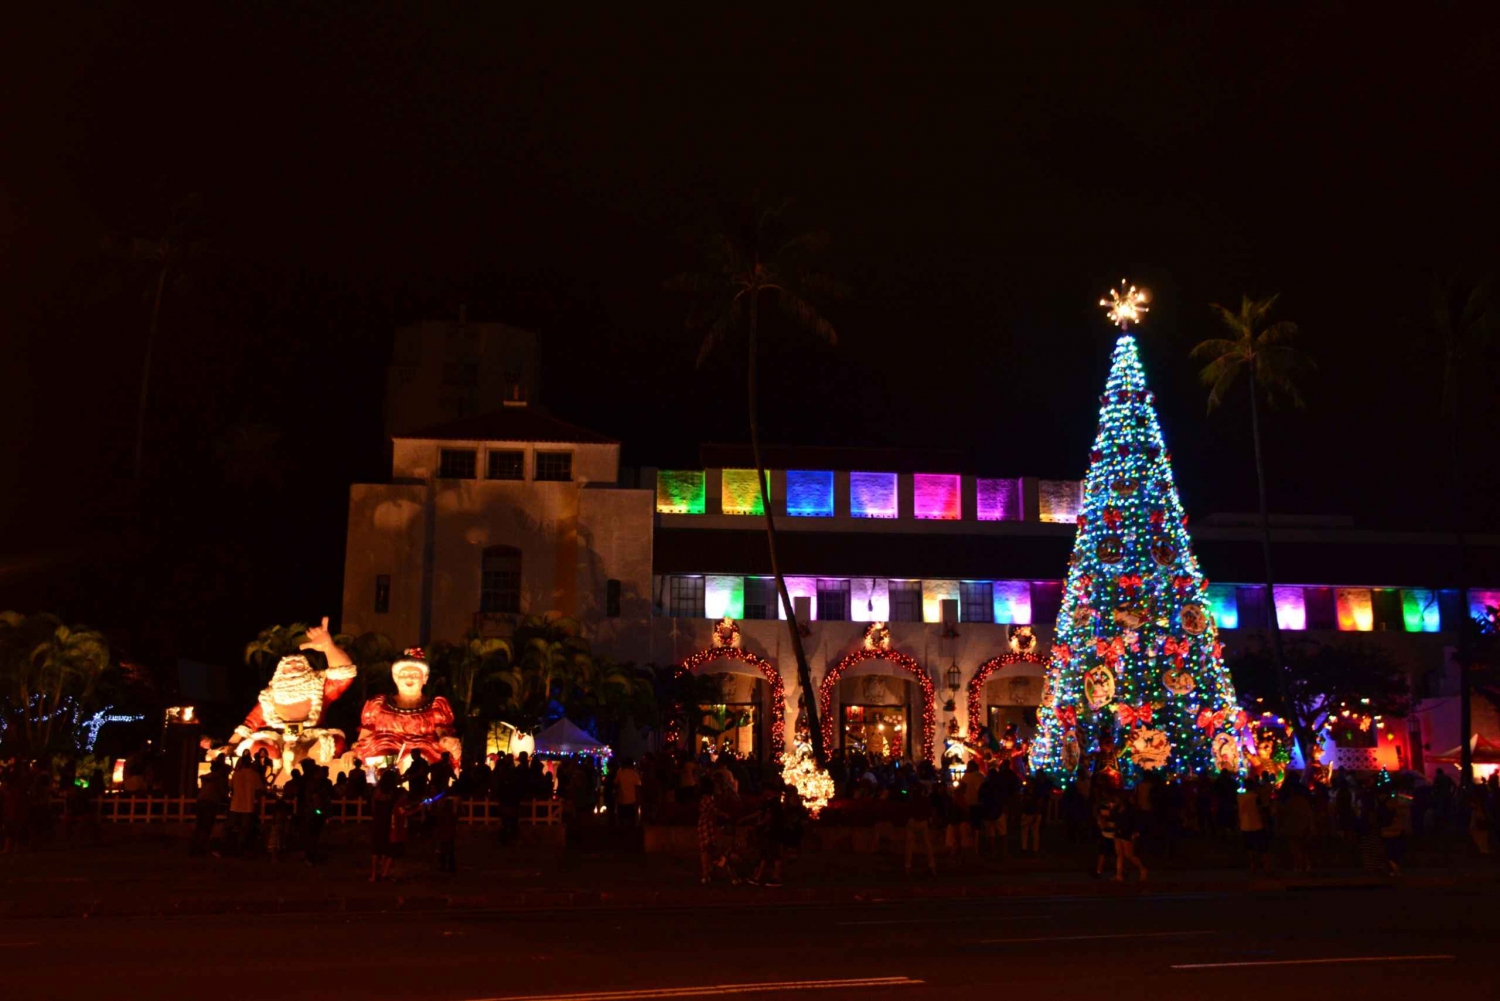 Oahu: Waikiki Trolley Holiday Lights Tour